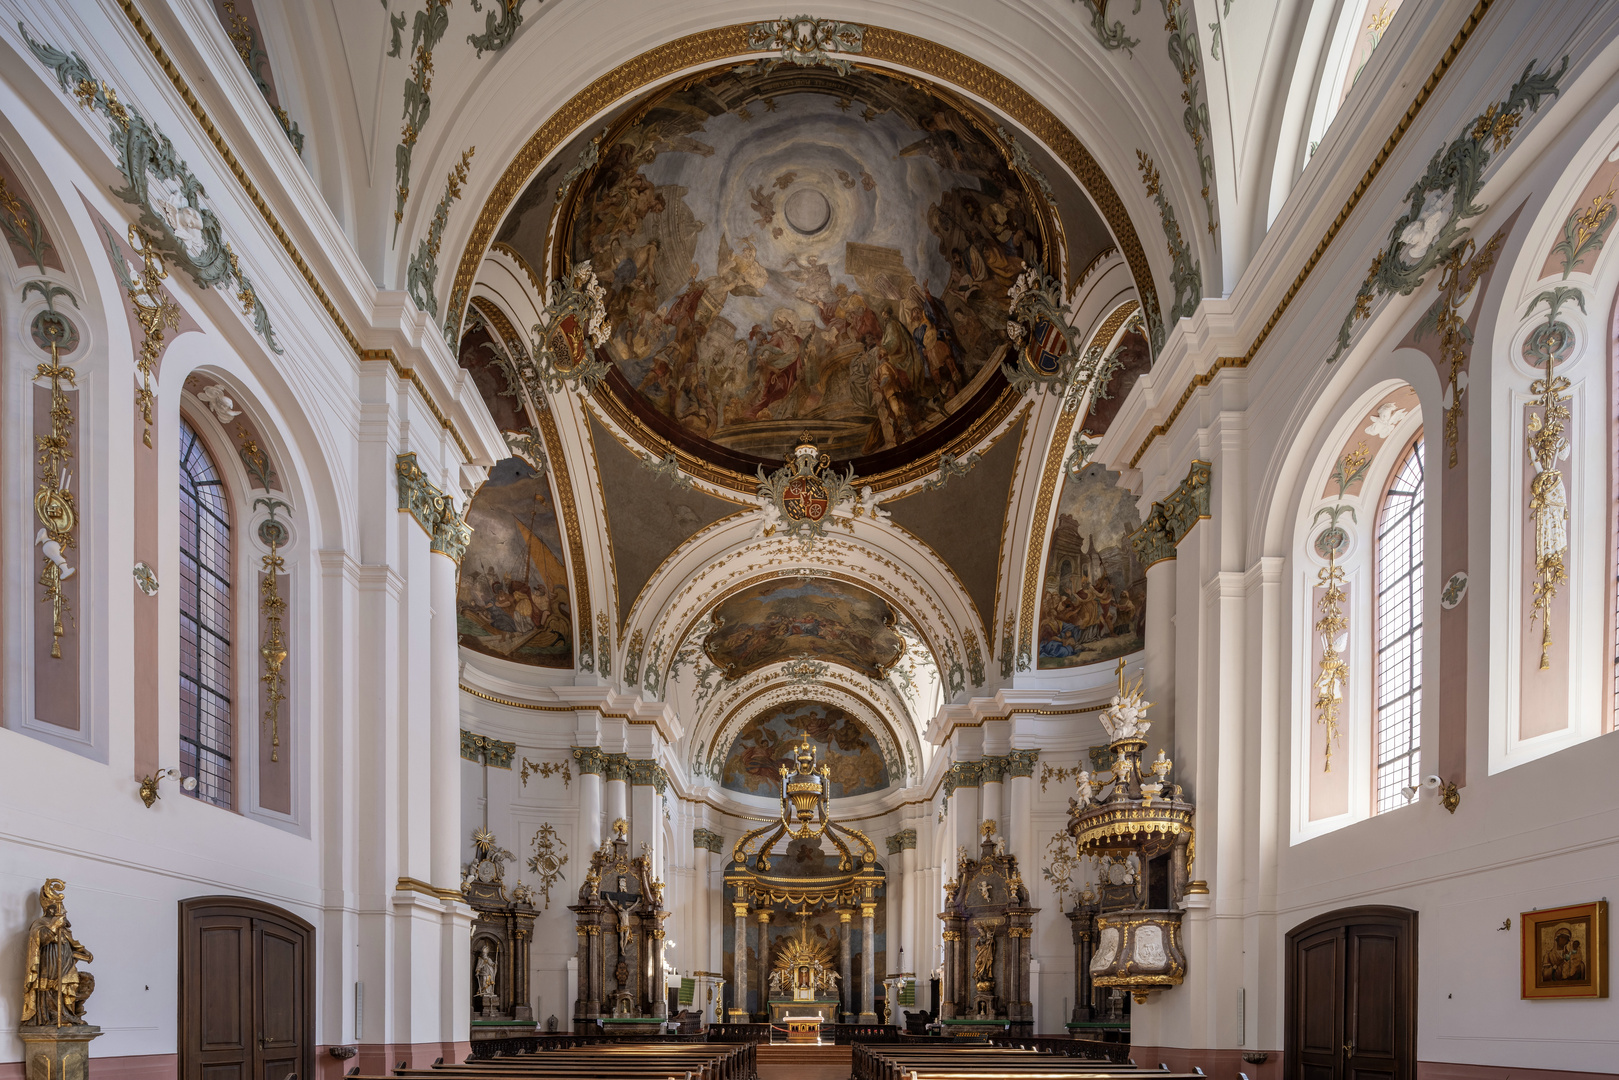  Mein Blick zum Chor in der Pfarrkirche St. Ignaz (Mainz)